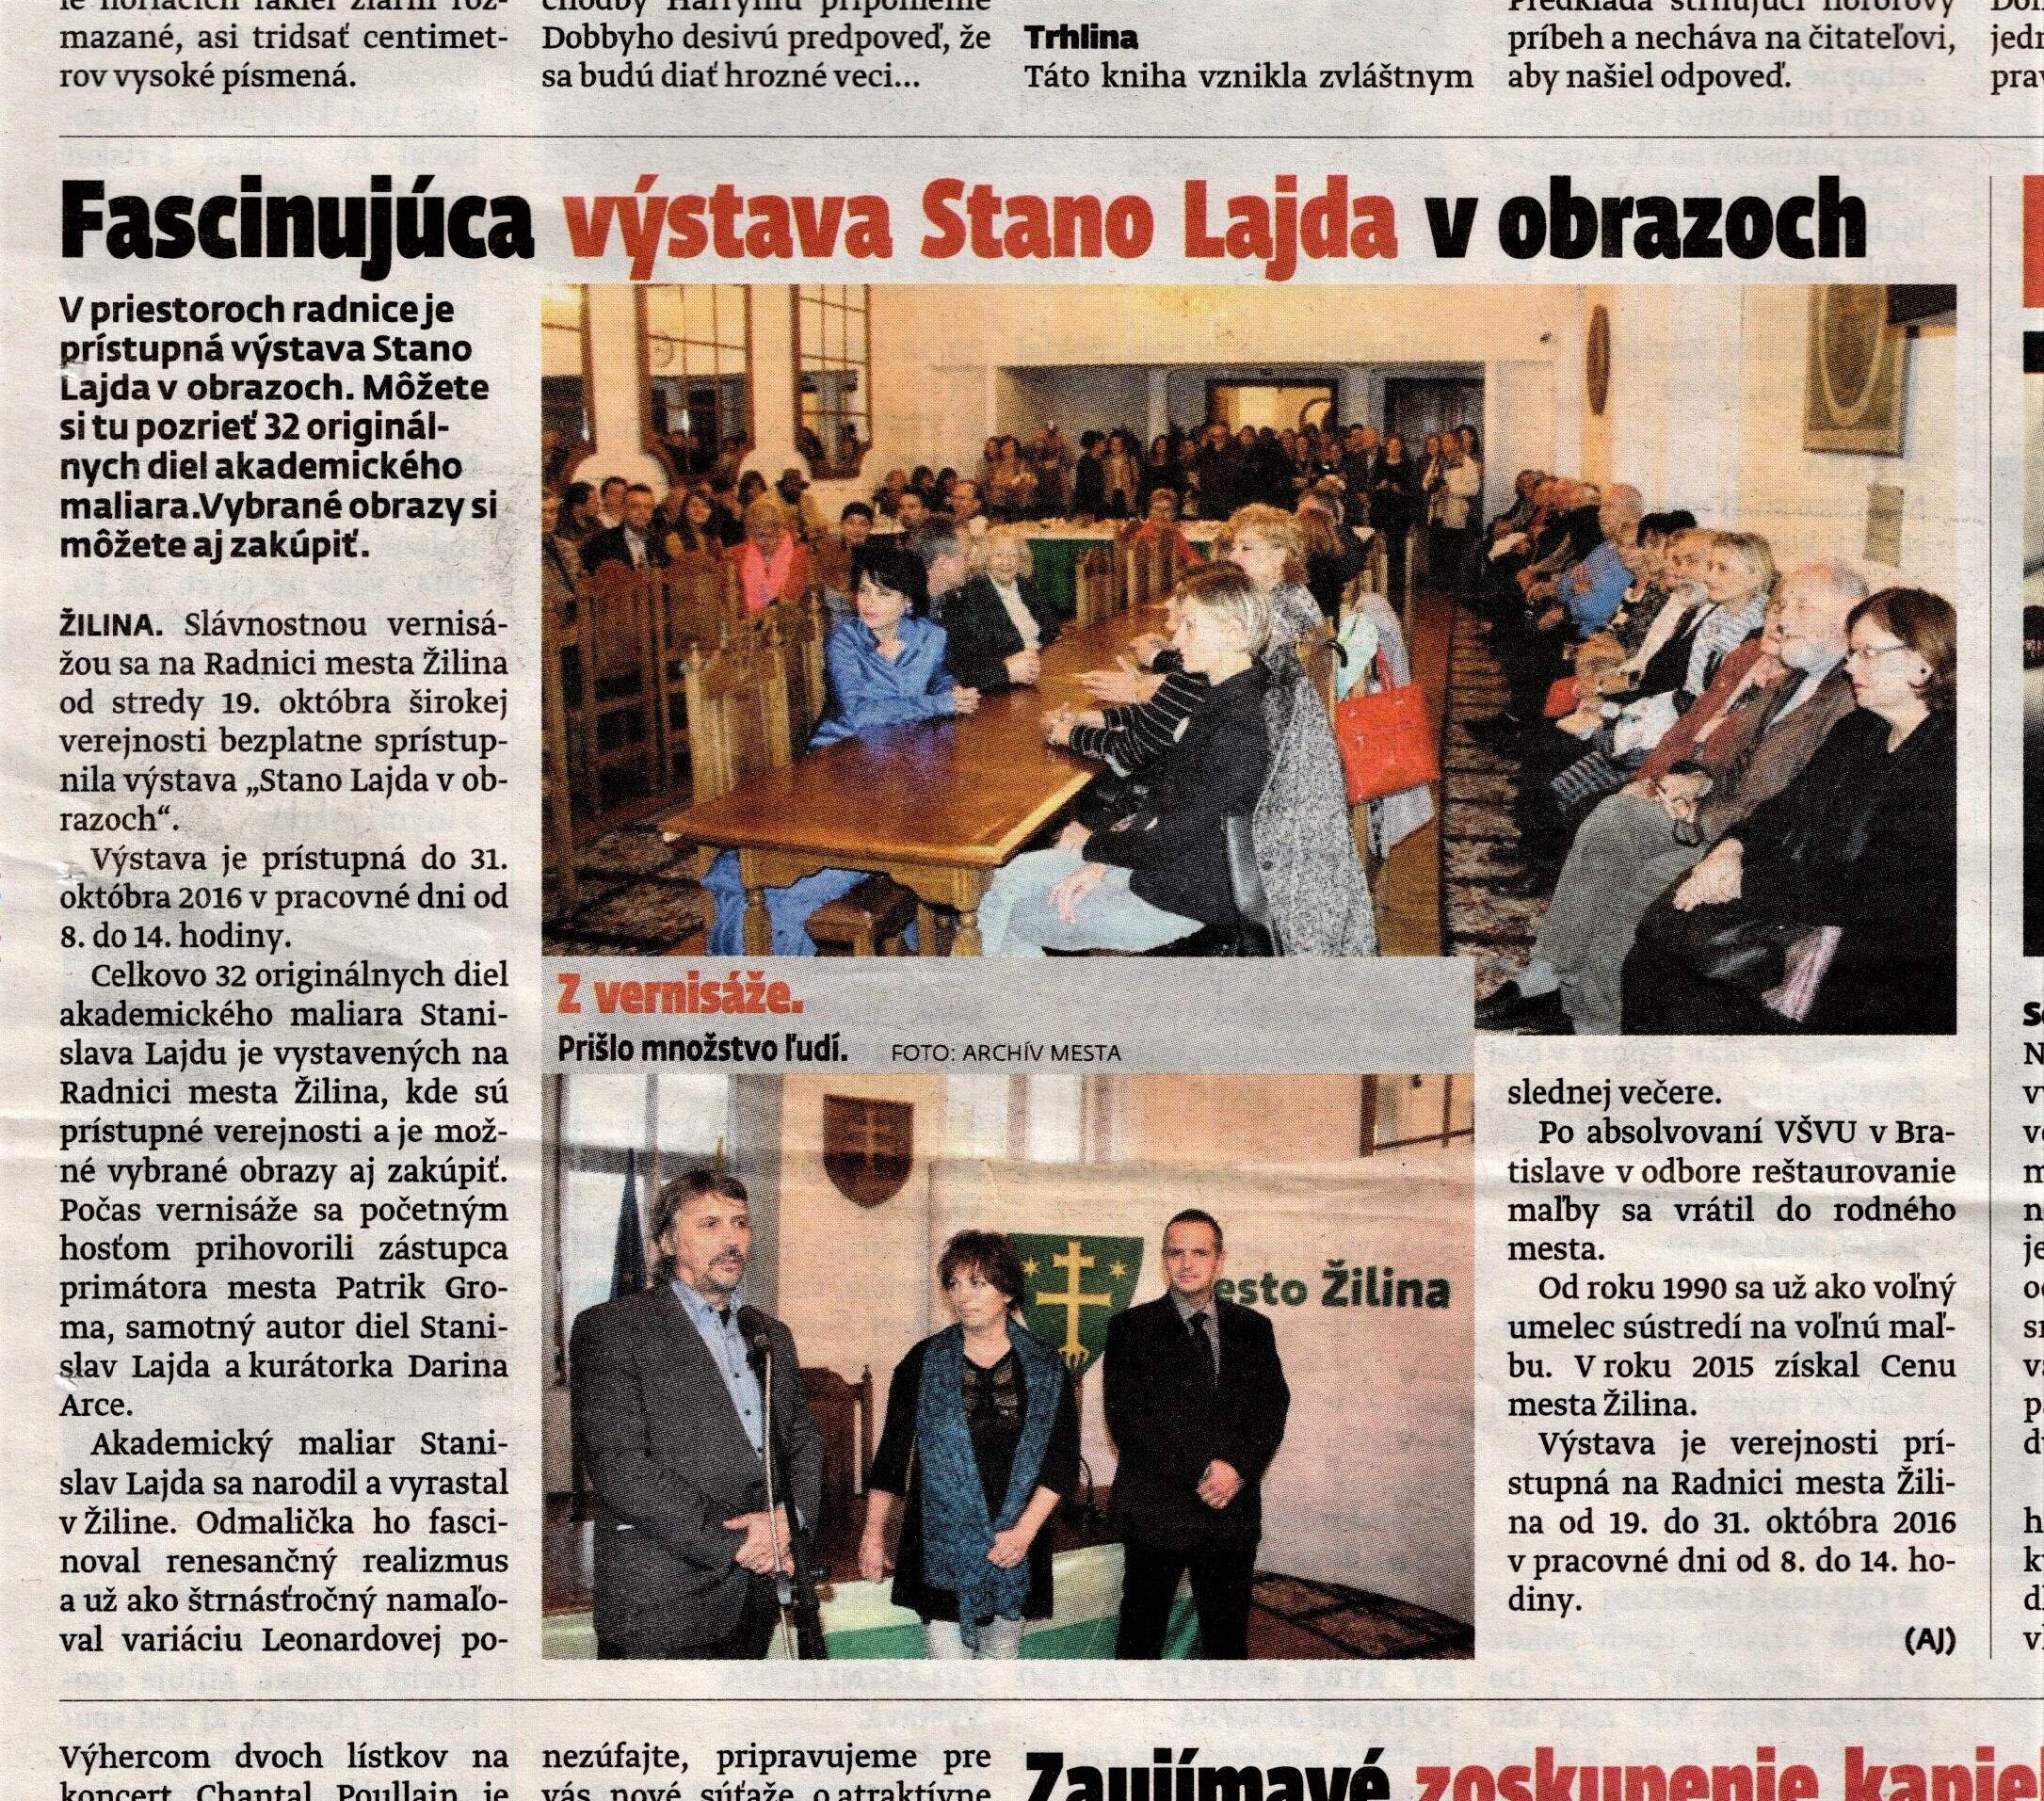 2016, 24. okt., MY - Žilinské noviny, roč.17, č. 42, str. 22